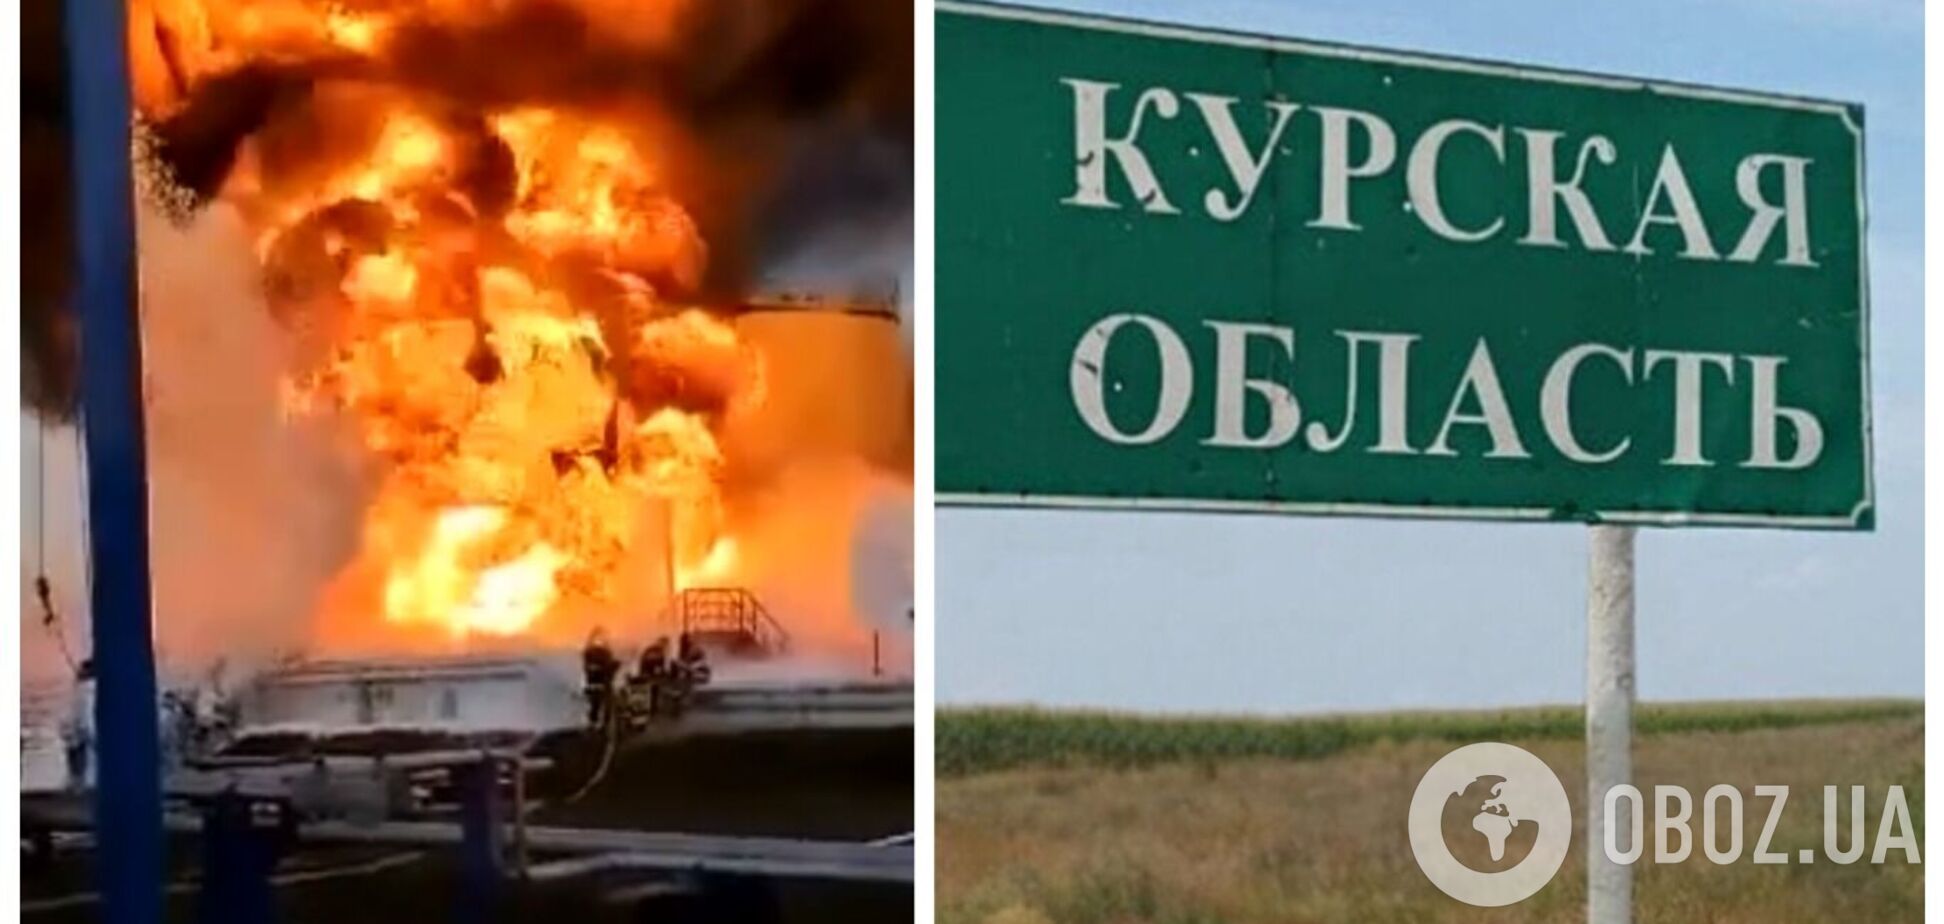 Здійнявся стовп вогню: в мережі з'явилися нові кадри 'бавовни' на аеродромі в Курській області РФ. Відео